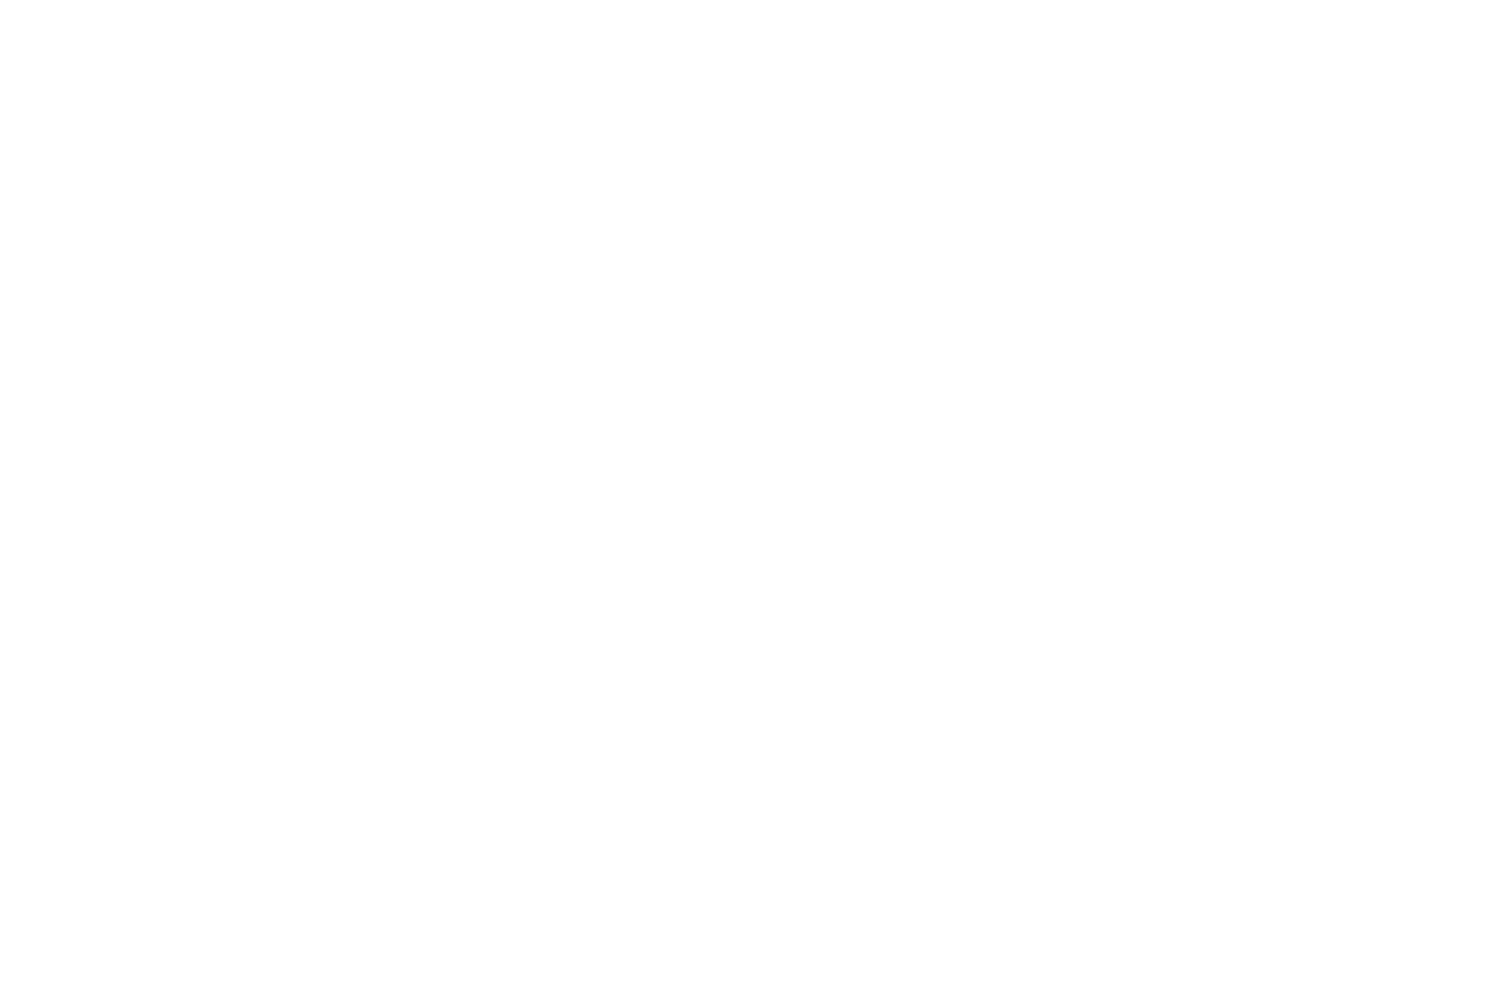 Transcription 2000